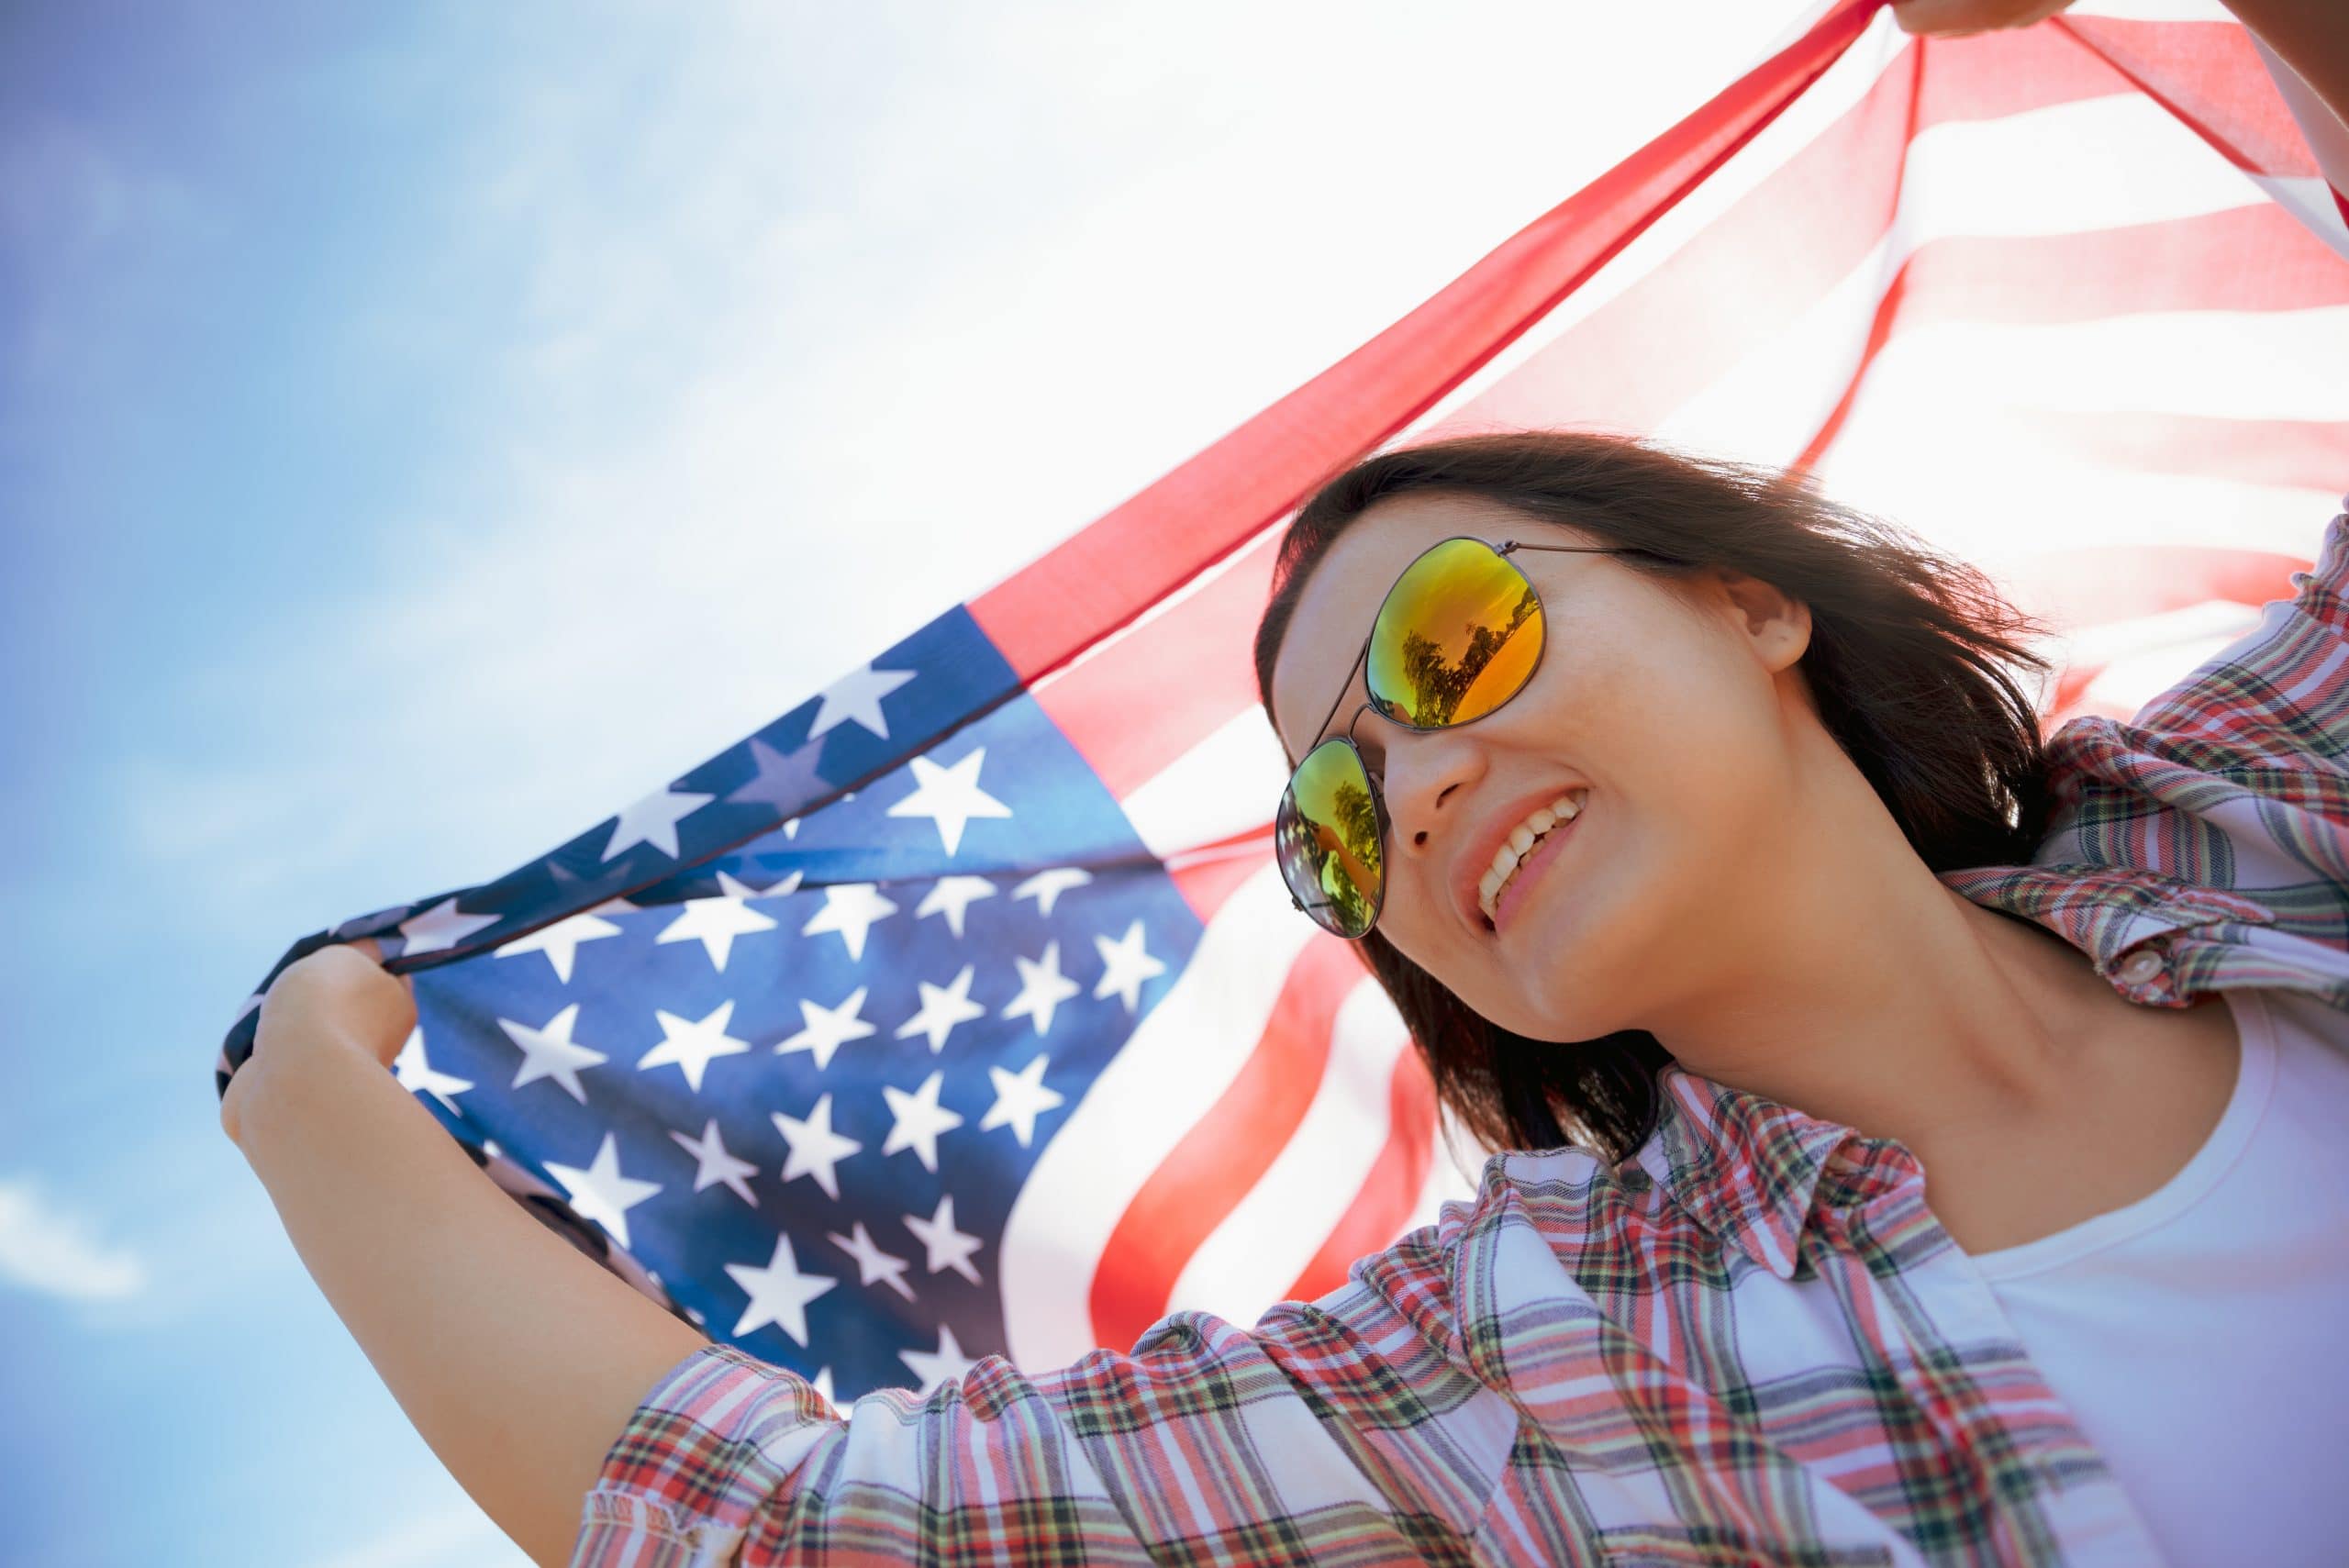 Adolescente arborant un drapeau américain durant son séjour linguistique usa